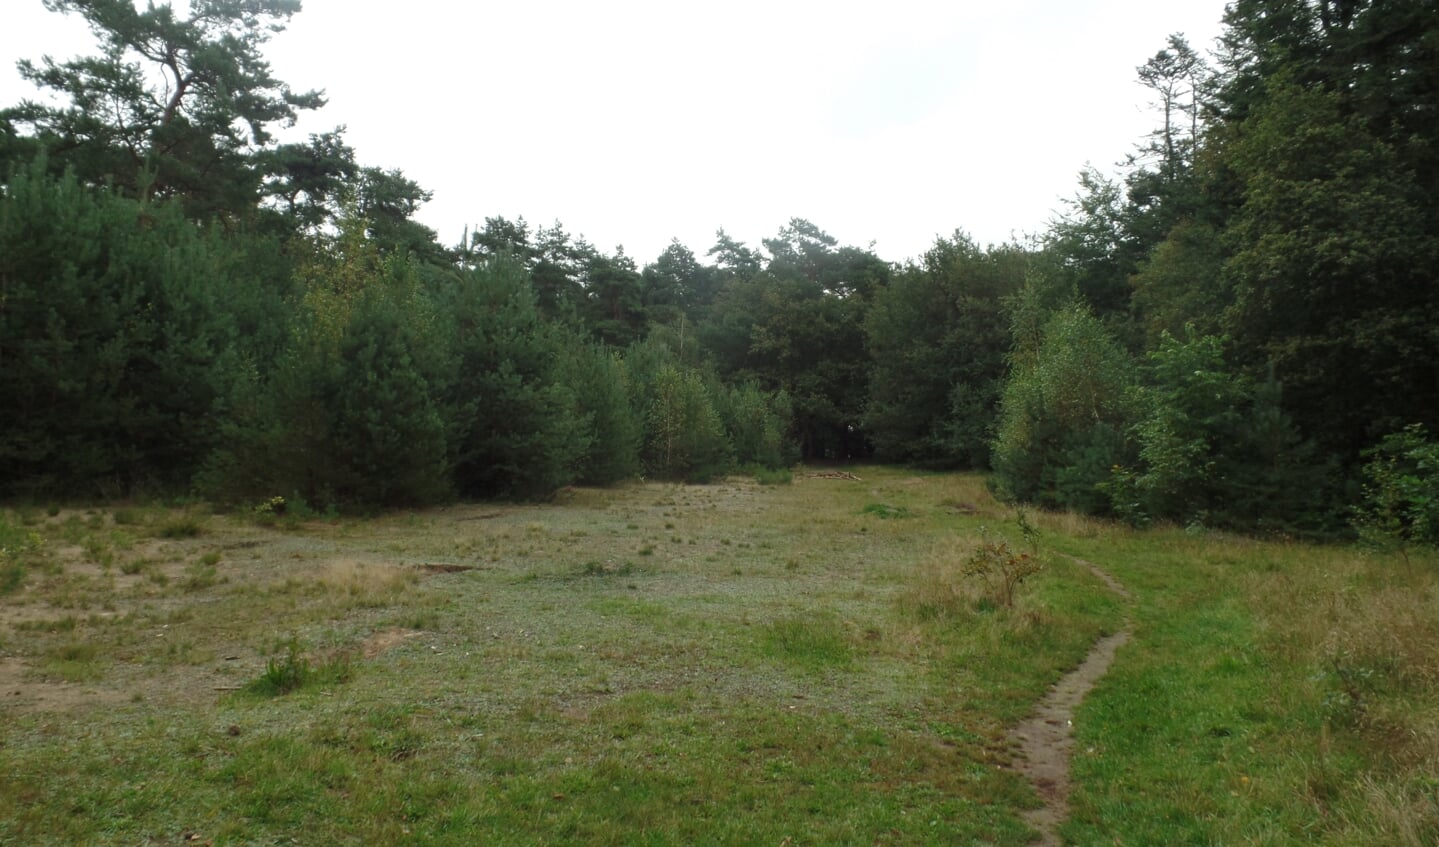 De nog kleine open plek in 't Rijkenbargse bos waar in het verleden de openluchtspelen werden opgevoerd. Foto: Jan Hendriksen, 